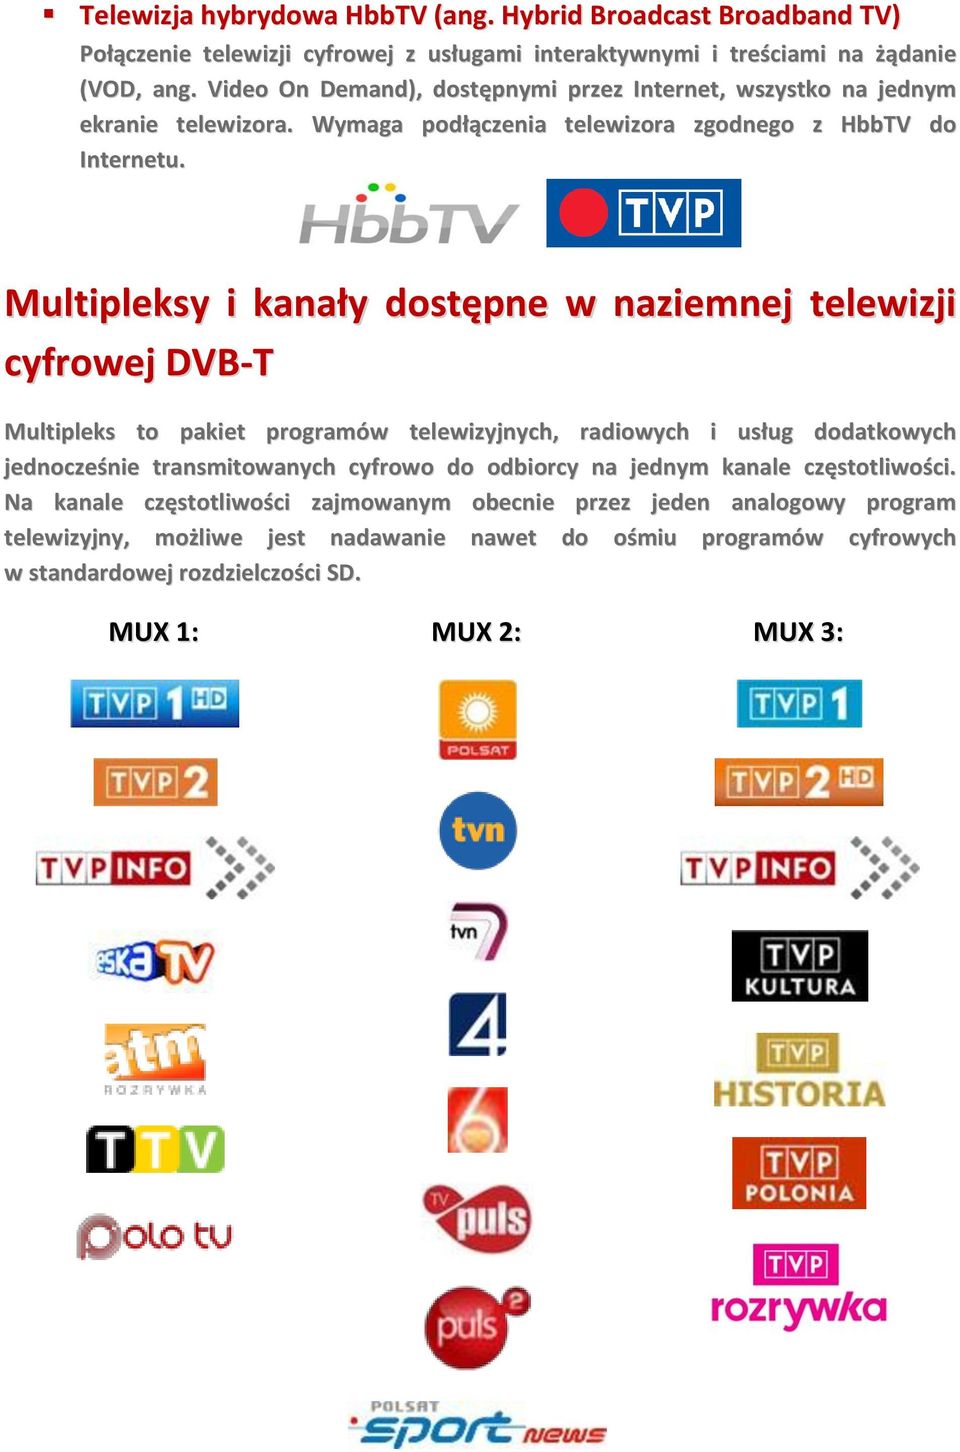 Multipleksy i kanały dostępne w naziemnej telewizji cyfrowej DVB-T Multipleks to pakiet programów telewizyjnych, radiowych i usług dodatkowych jednocześnie transmitowanych cyfrowo